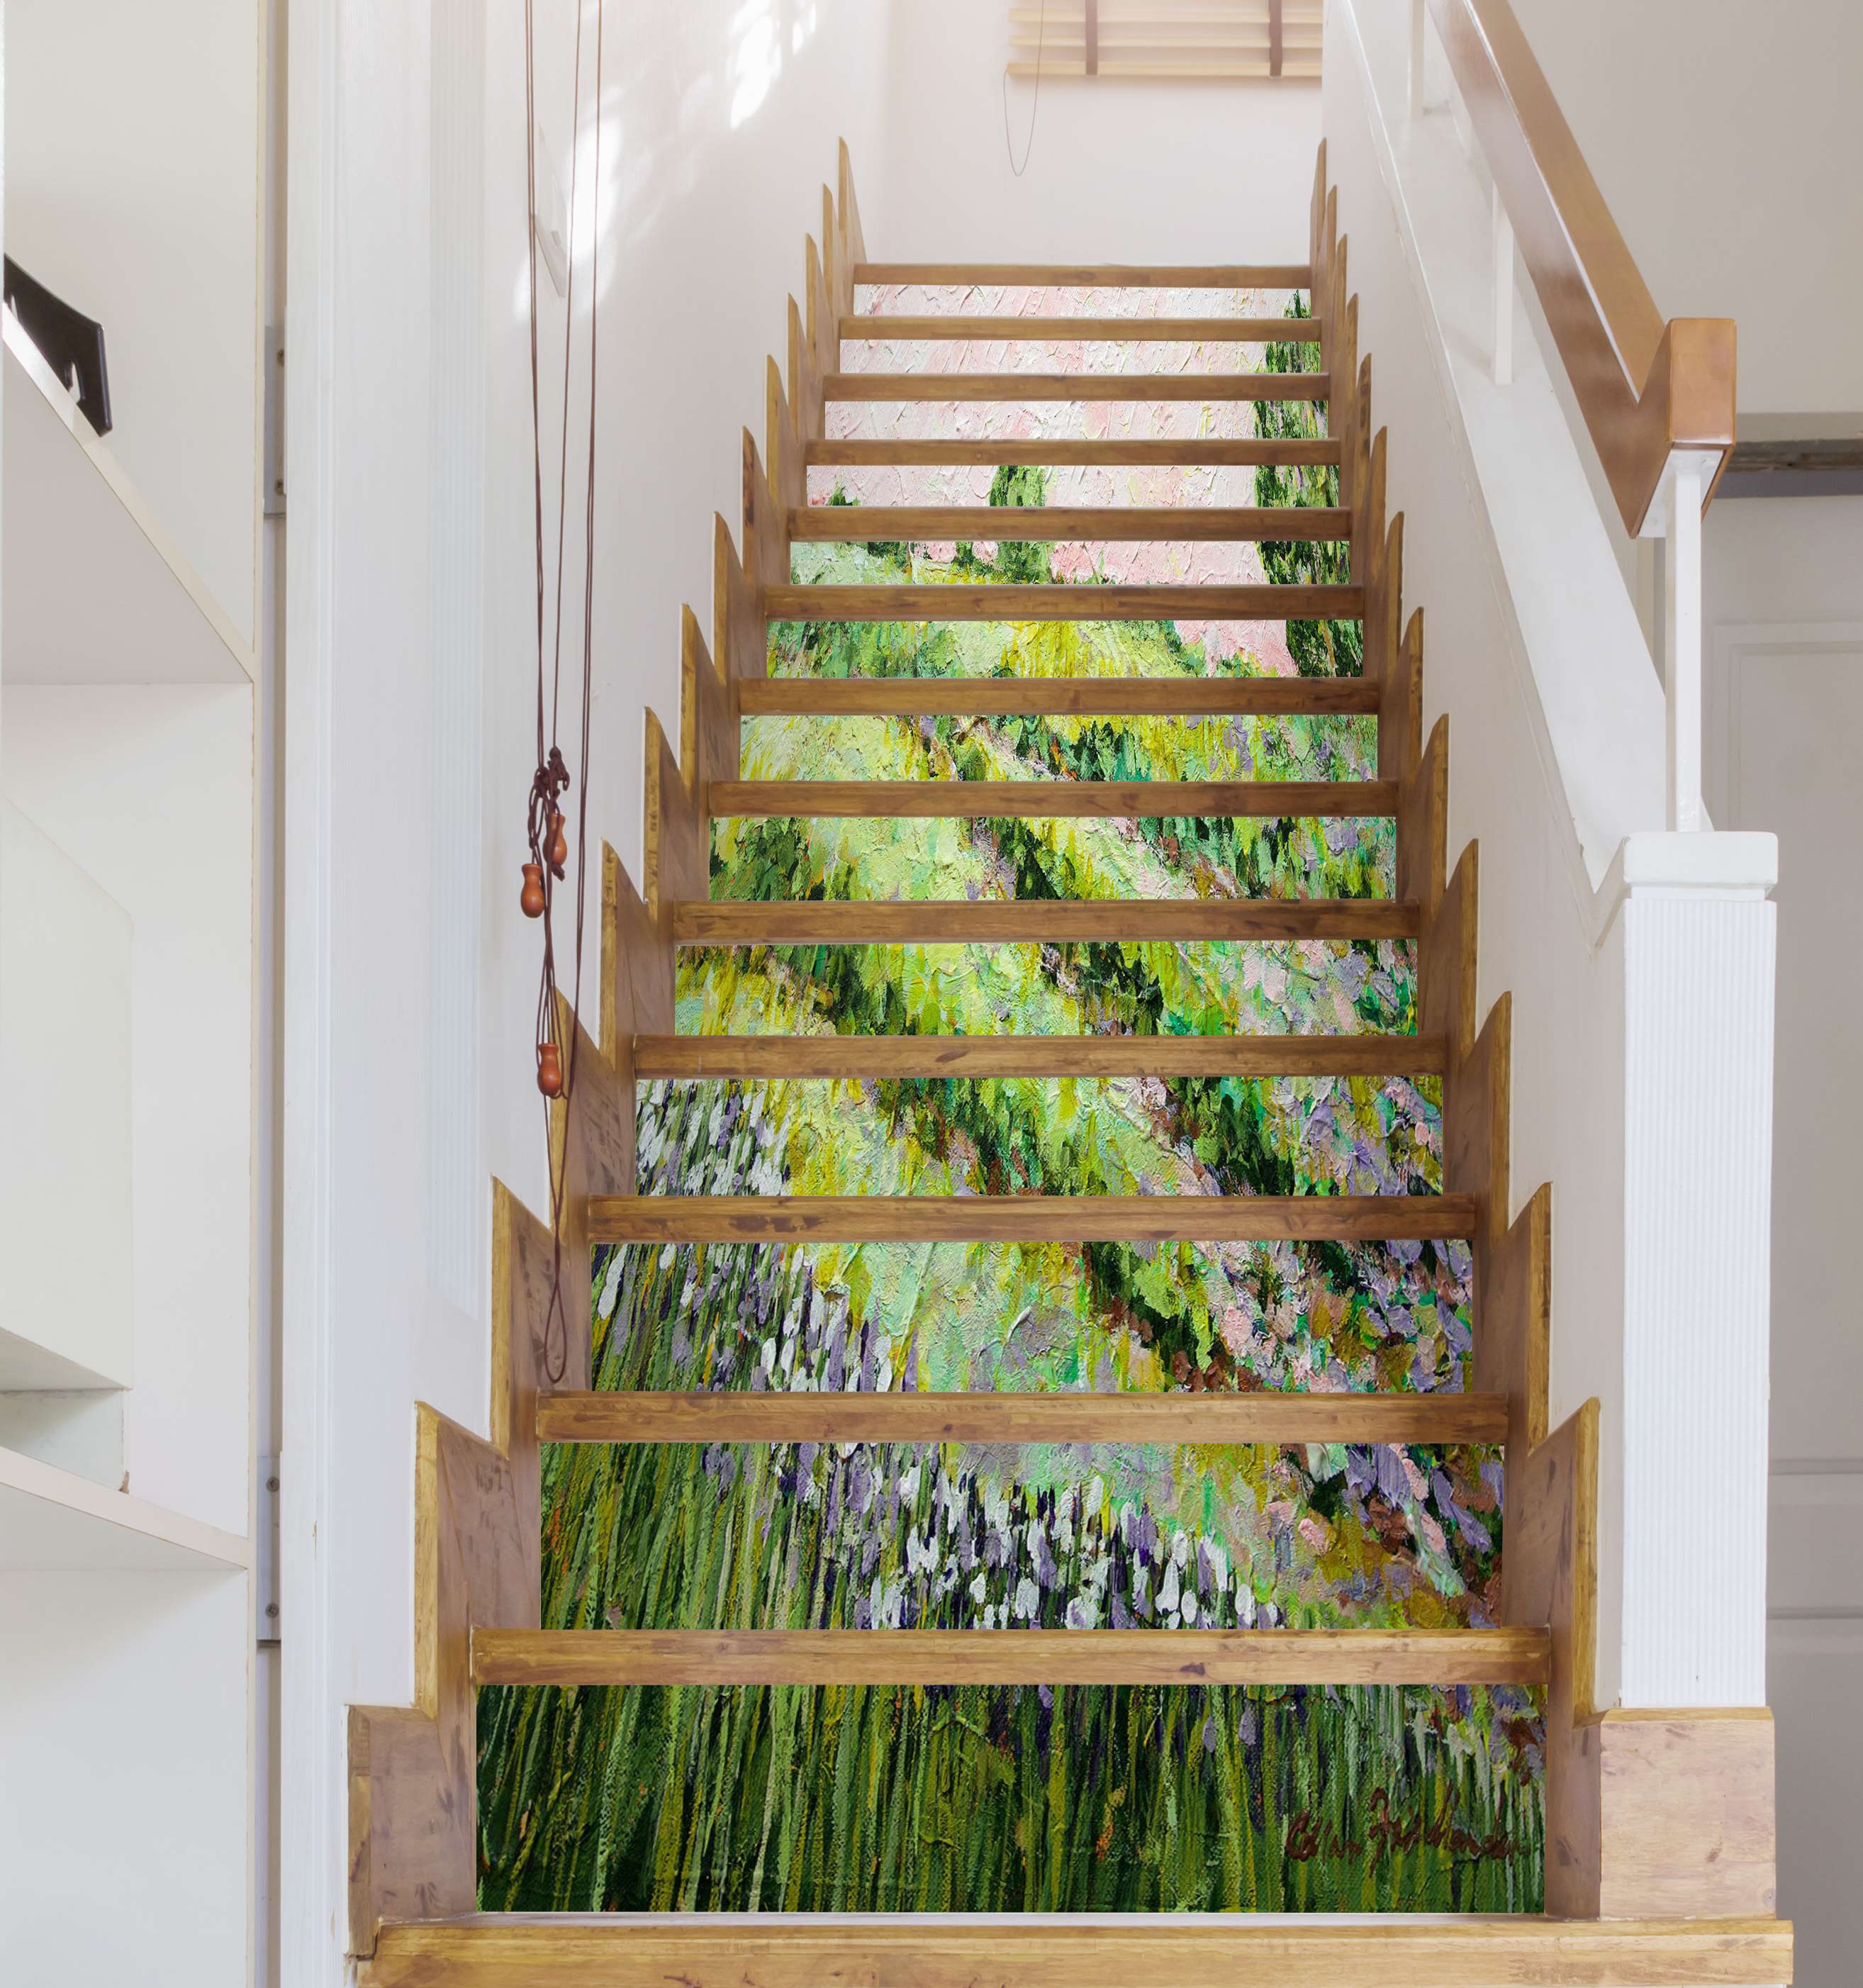 3D Hillside Grass Flowers 9096 Allan P. Friedlander Stair Risers